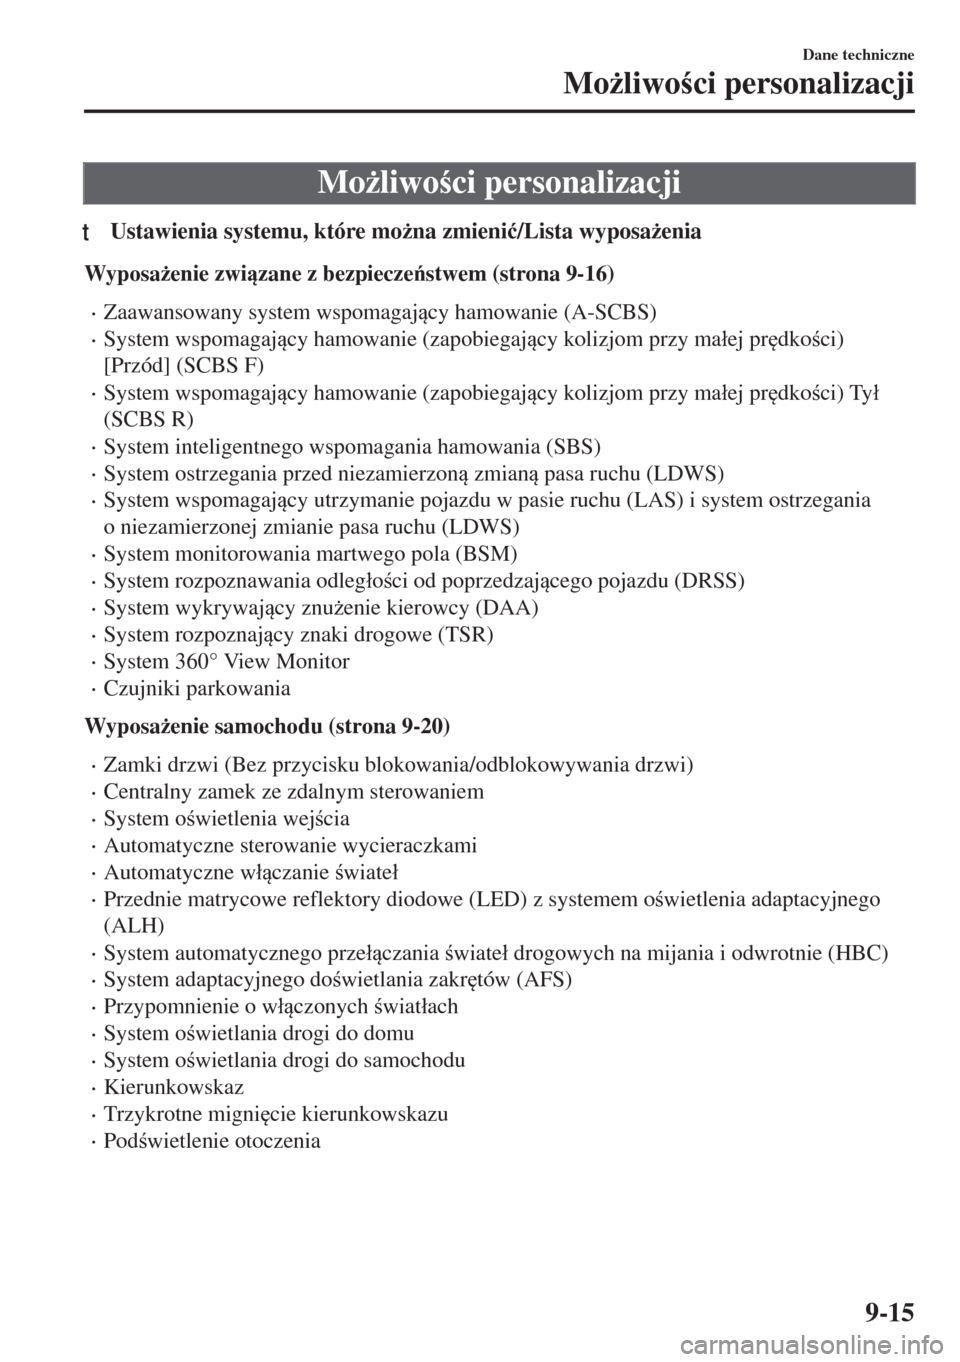 MAZDA MODEL 6 2018  Instrukcja Obsługi (in Polish)  Mo*liwoci personalizacji
tUstawienia systemu, które mo*na zmieni�ü/Lista wyposa*enia
Wyposa*enie zwizane z bezpieczestwem (strona 9-16)
•Zaawansowany system wspomagajcy hamowanie (A-SC